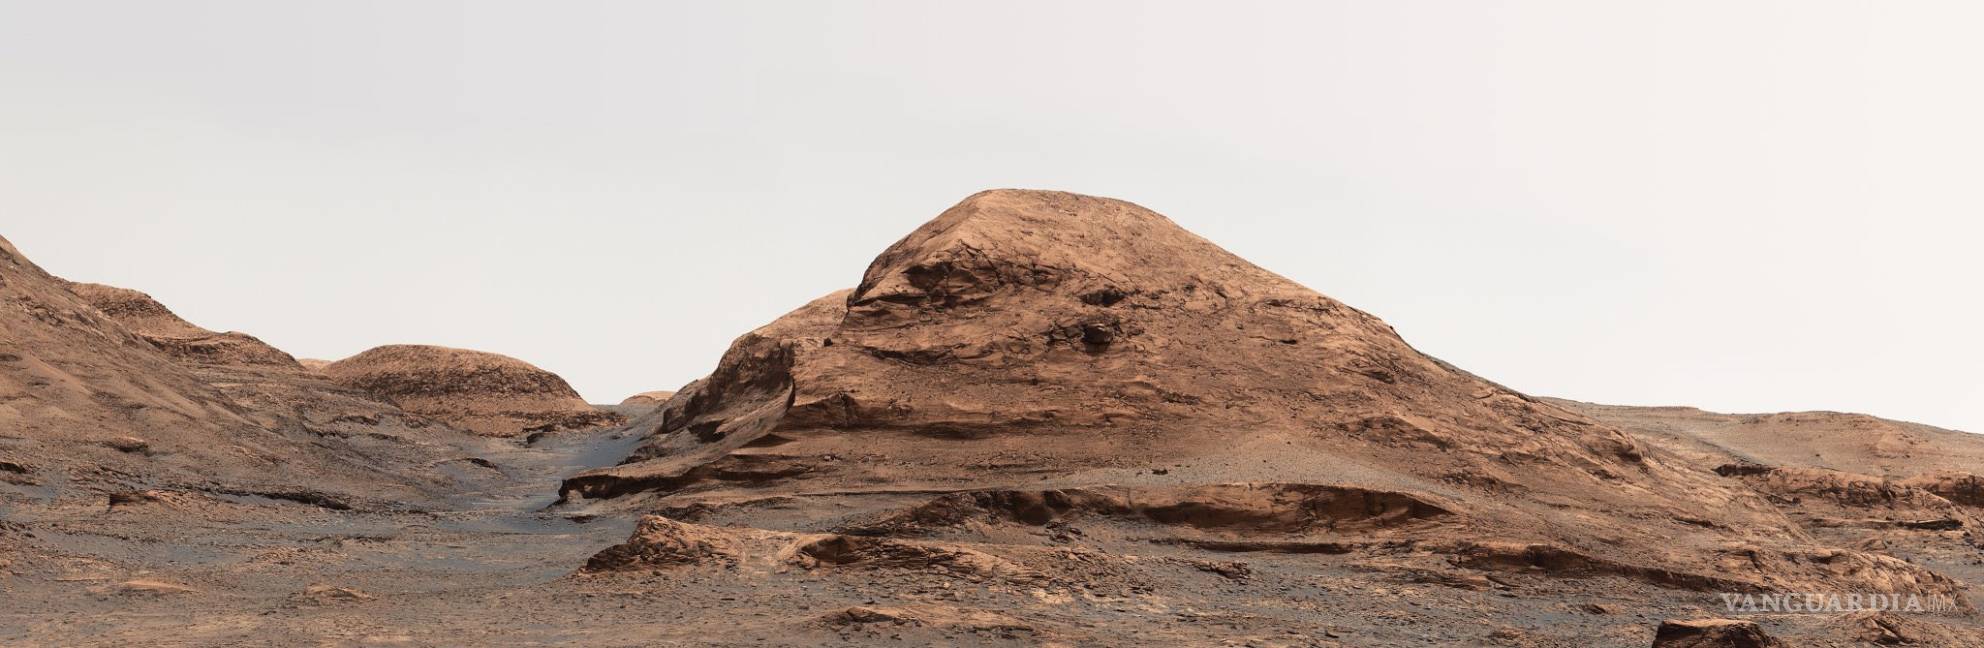 $!NASA nombrará montaña de Marte en honor al científico mexicano Rafael Navarro